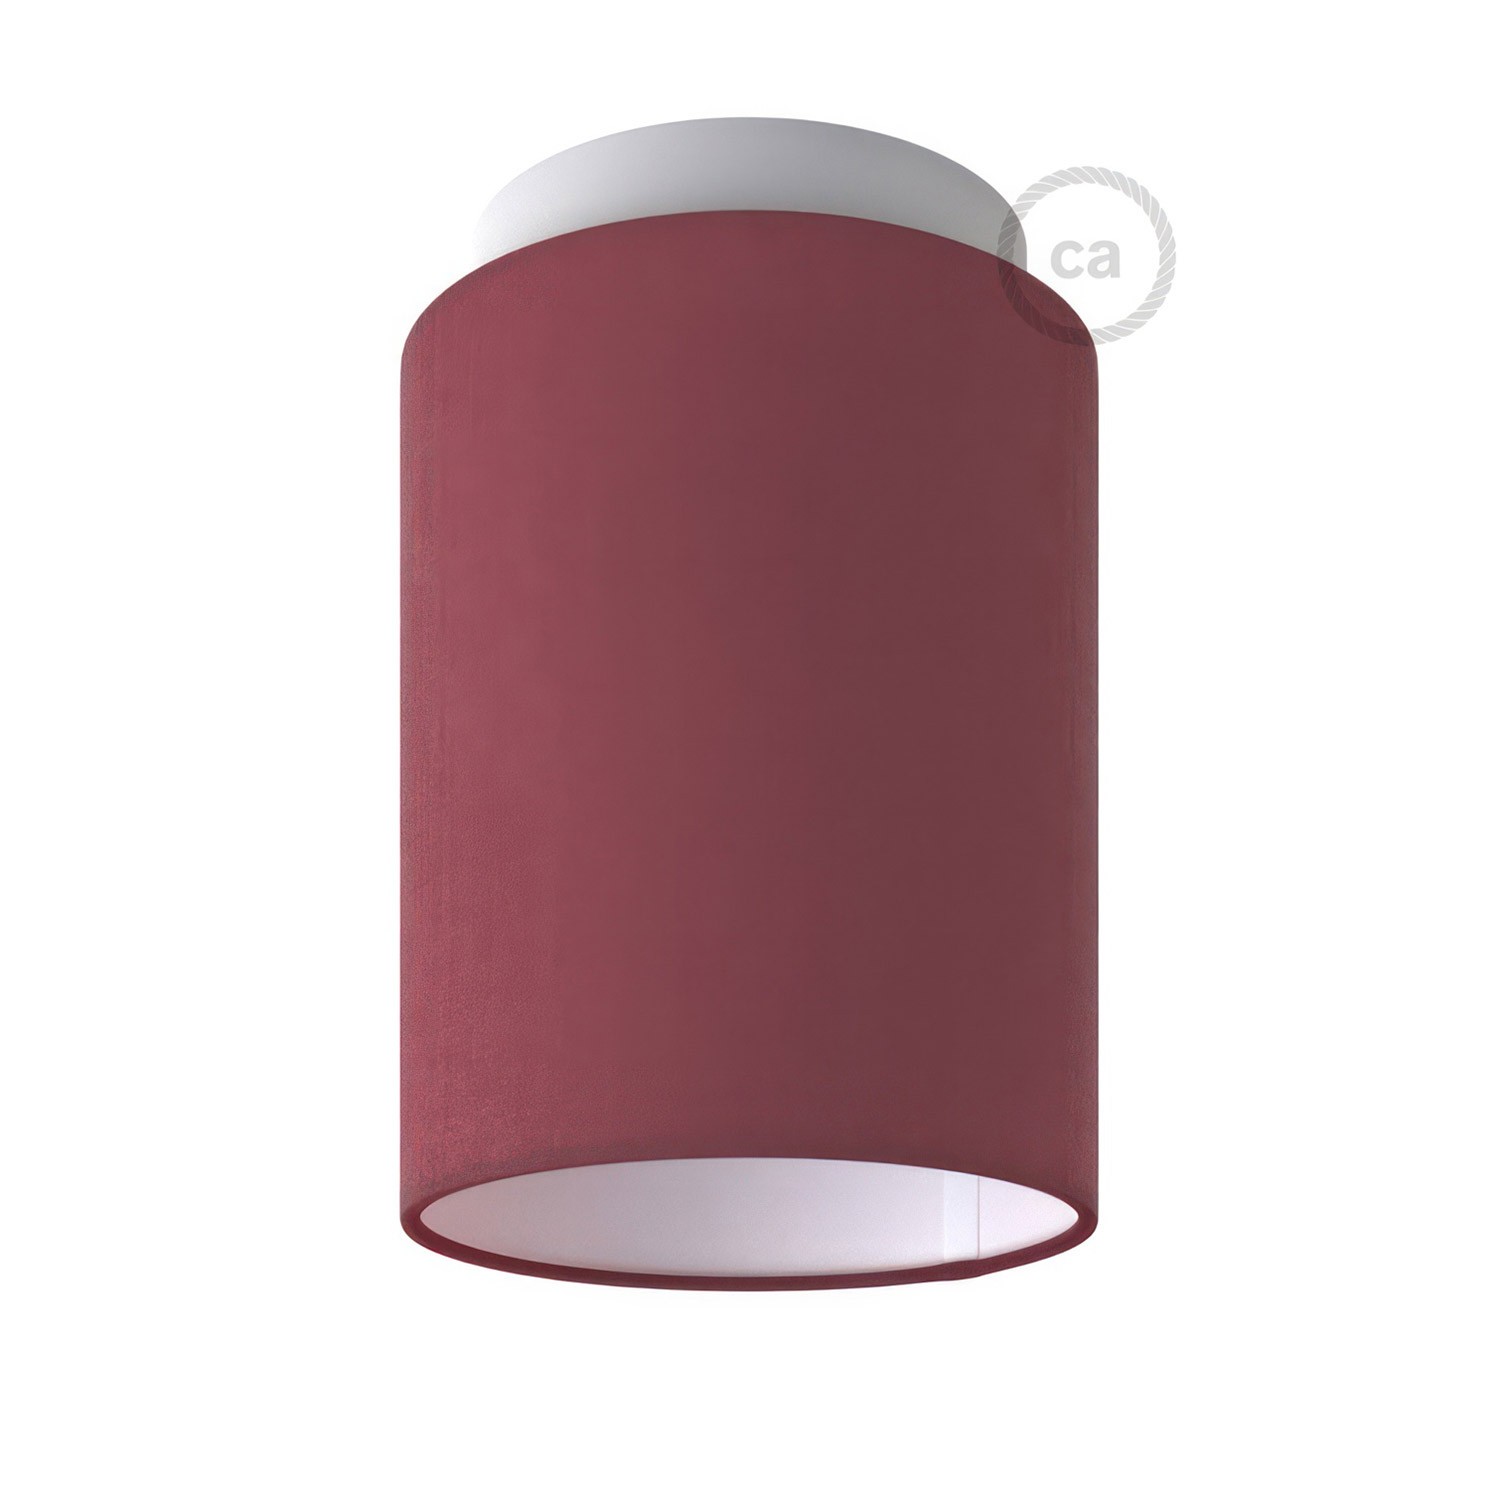 Fermaluce Pastel kovinsko svetilo z valjasto obliko senčila, Ø 15cm h18cm, za stensko ali stropno montažo